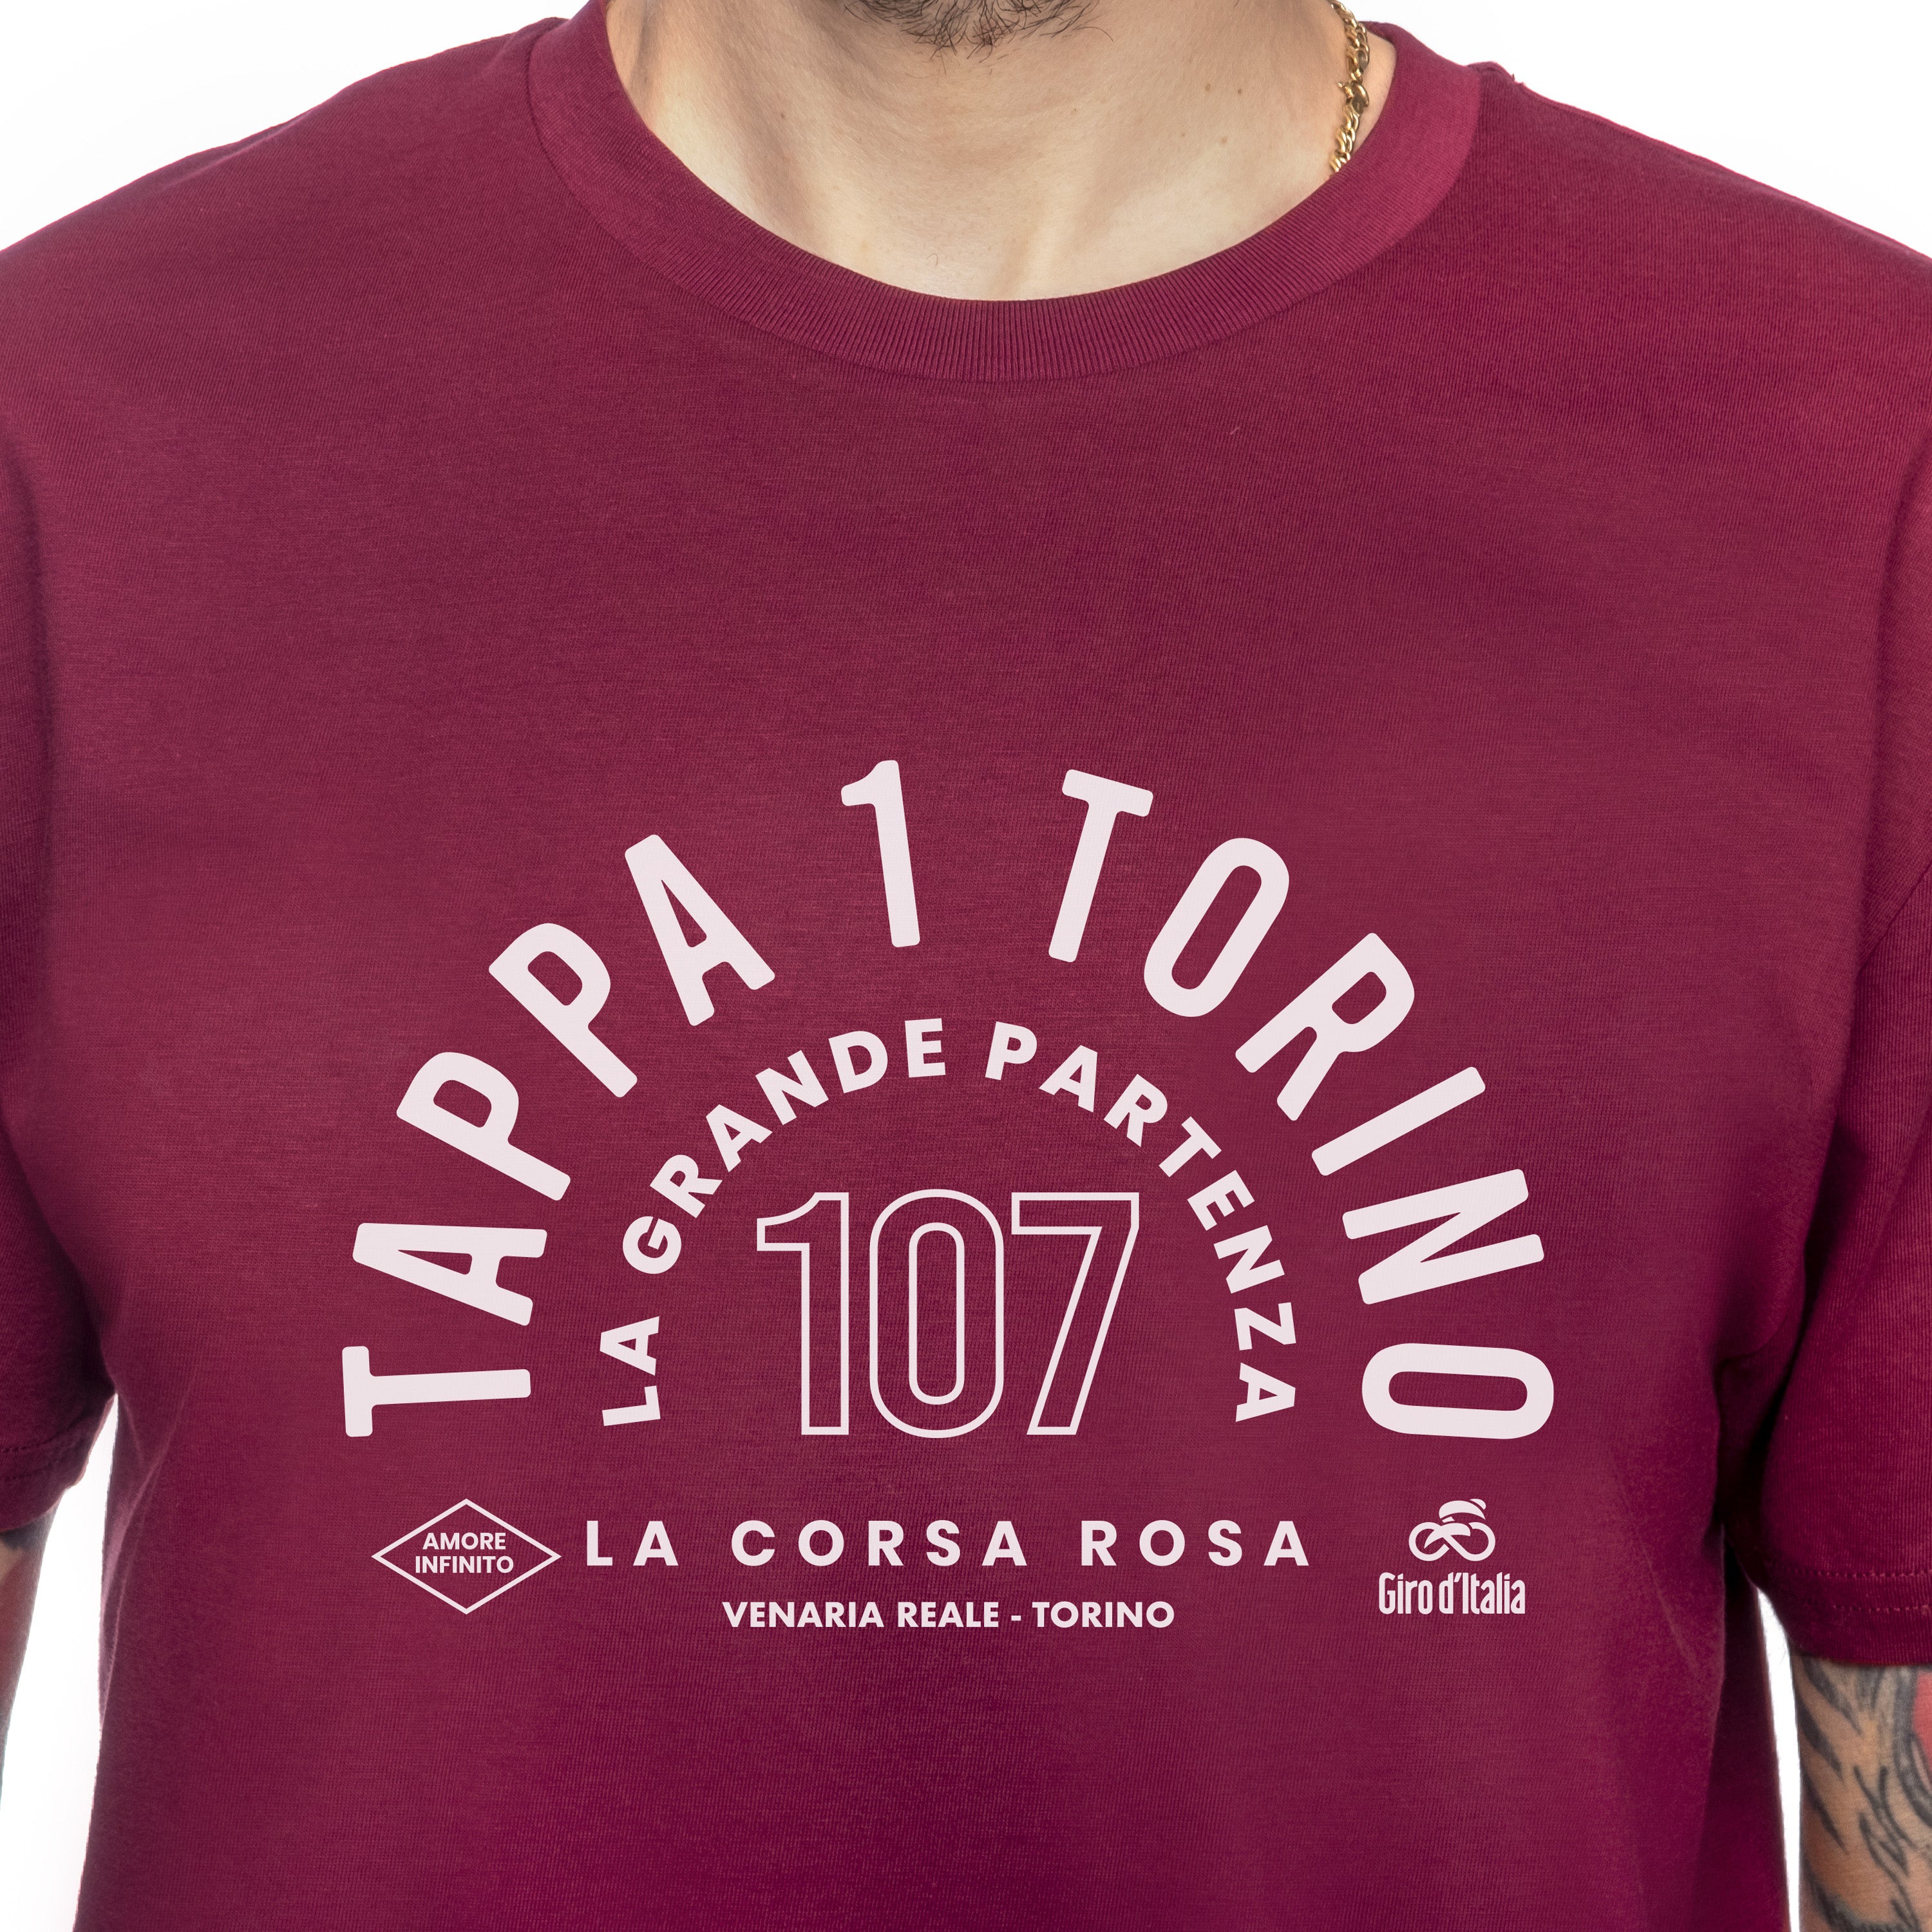 Turin Der Große Start T-Shirt Giro d'Italia